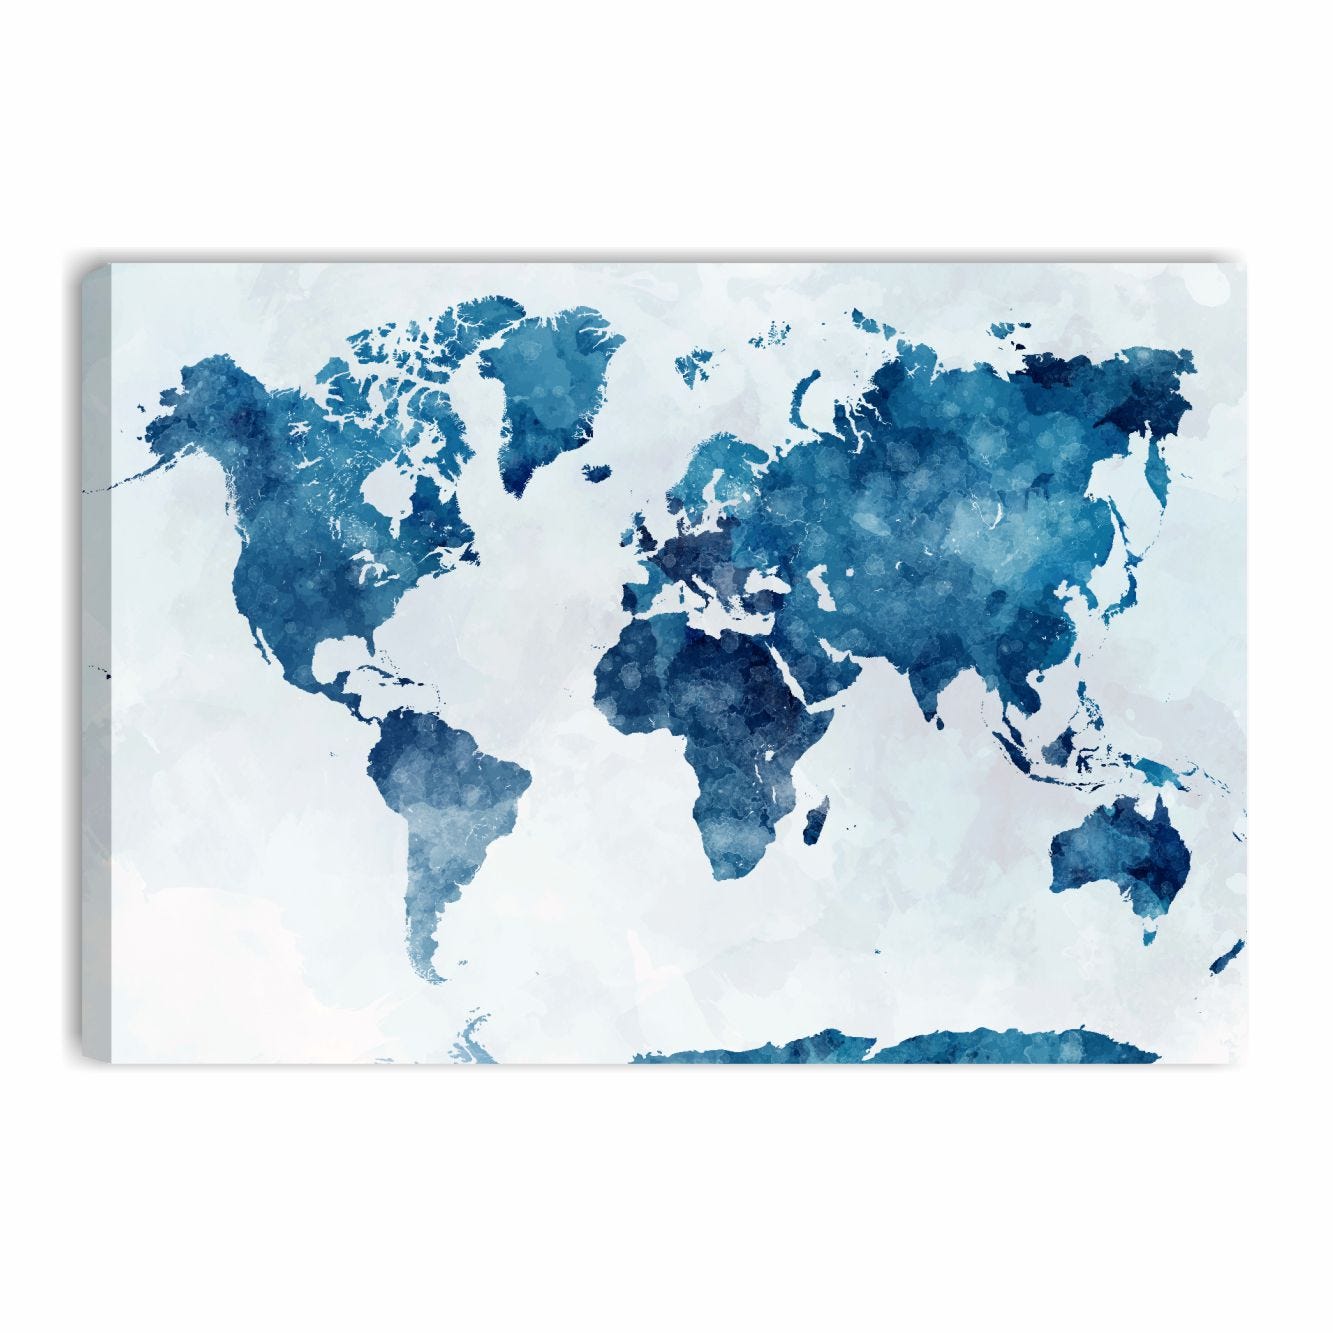 Mappamondo blu - Quadro moderno con mappa del mondo stampa su tela 70x50 cm